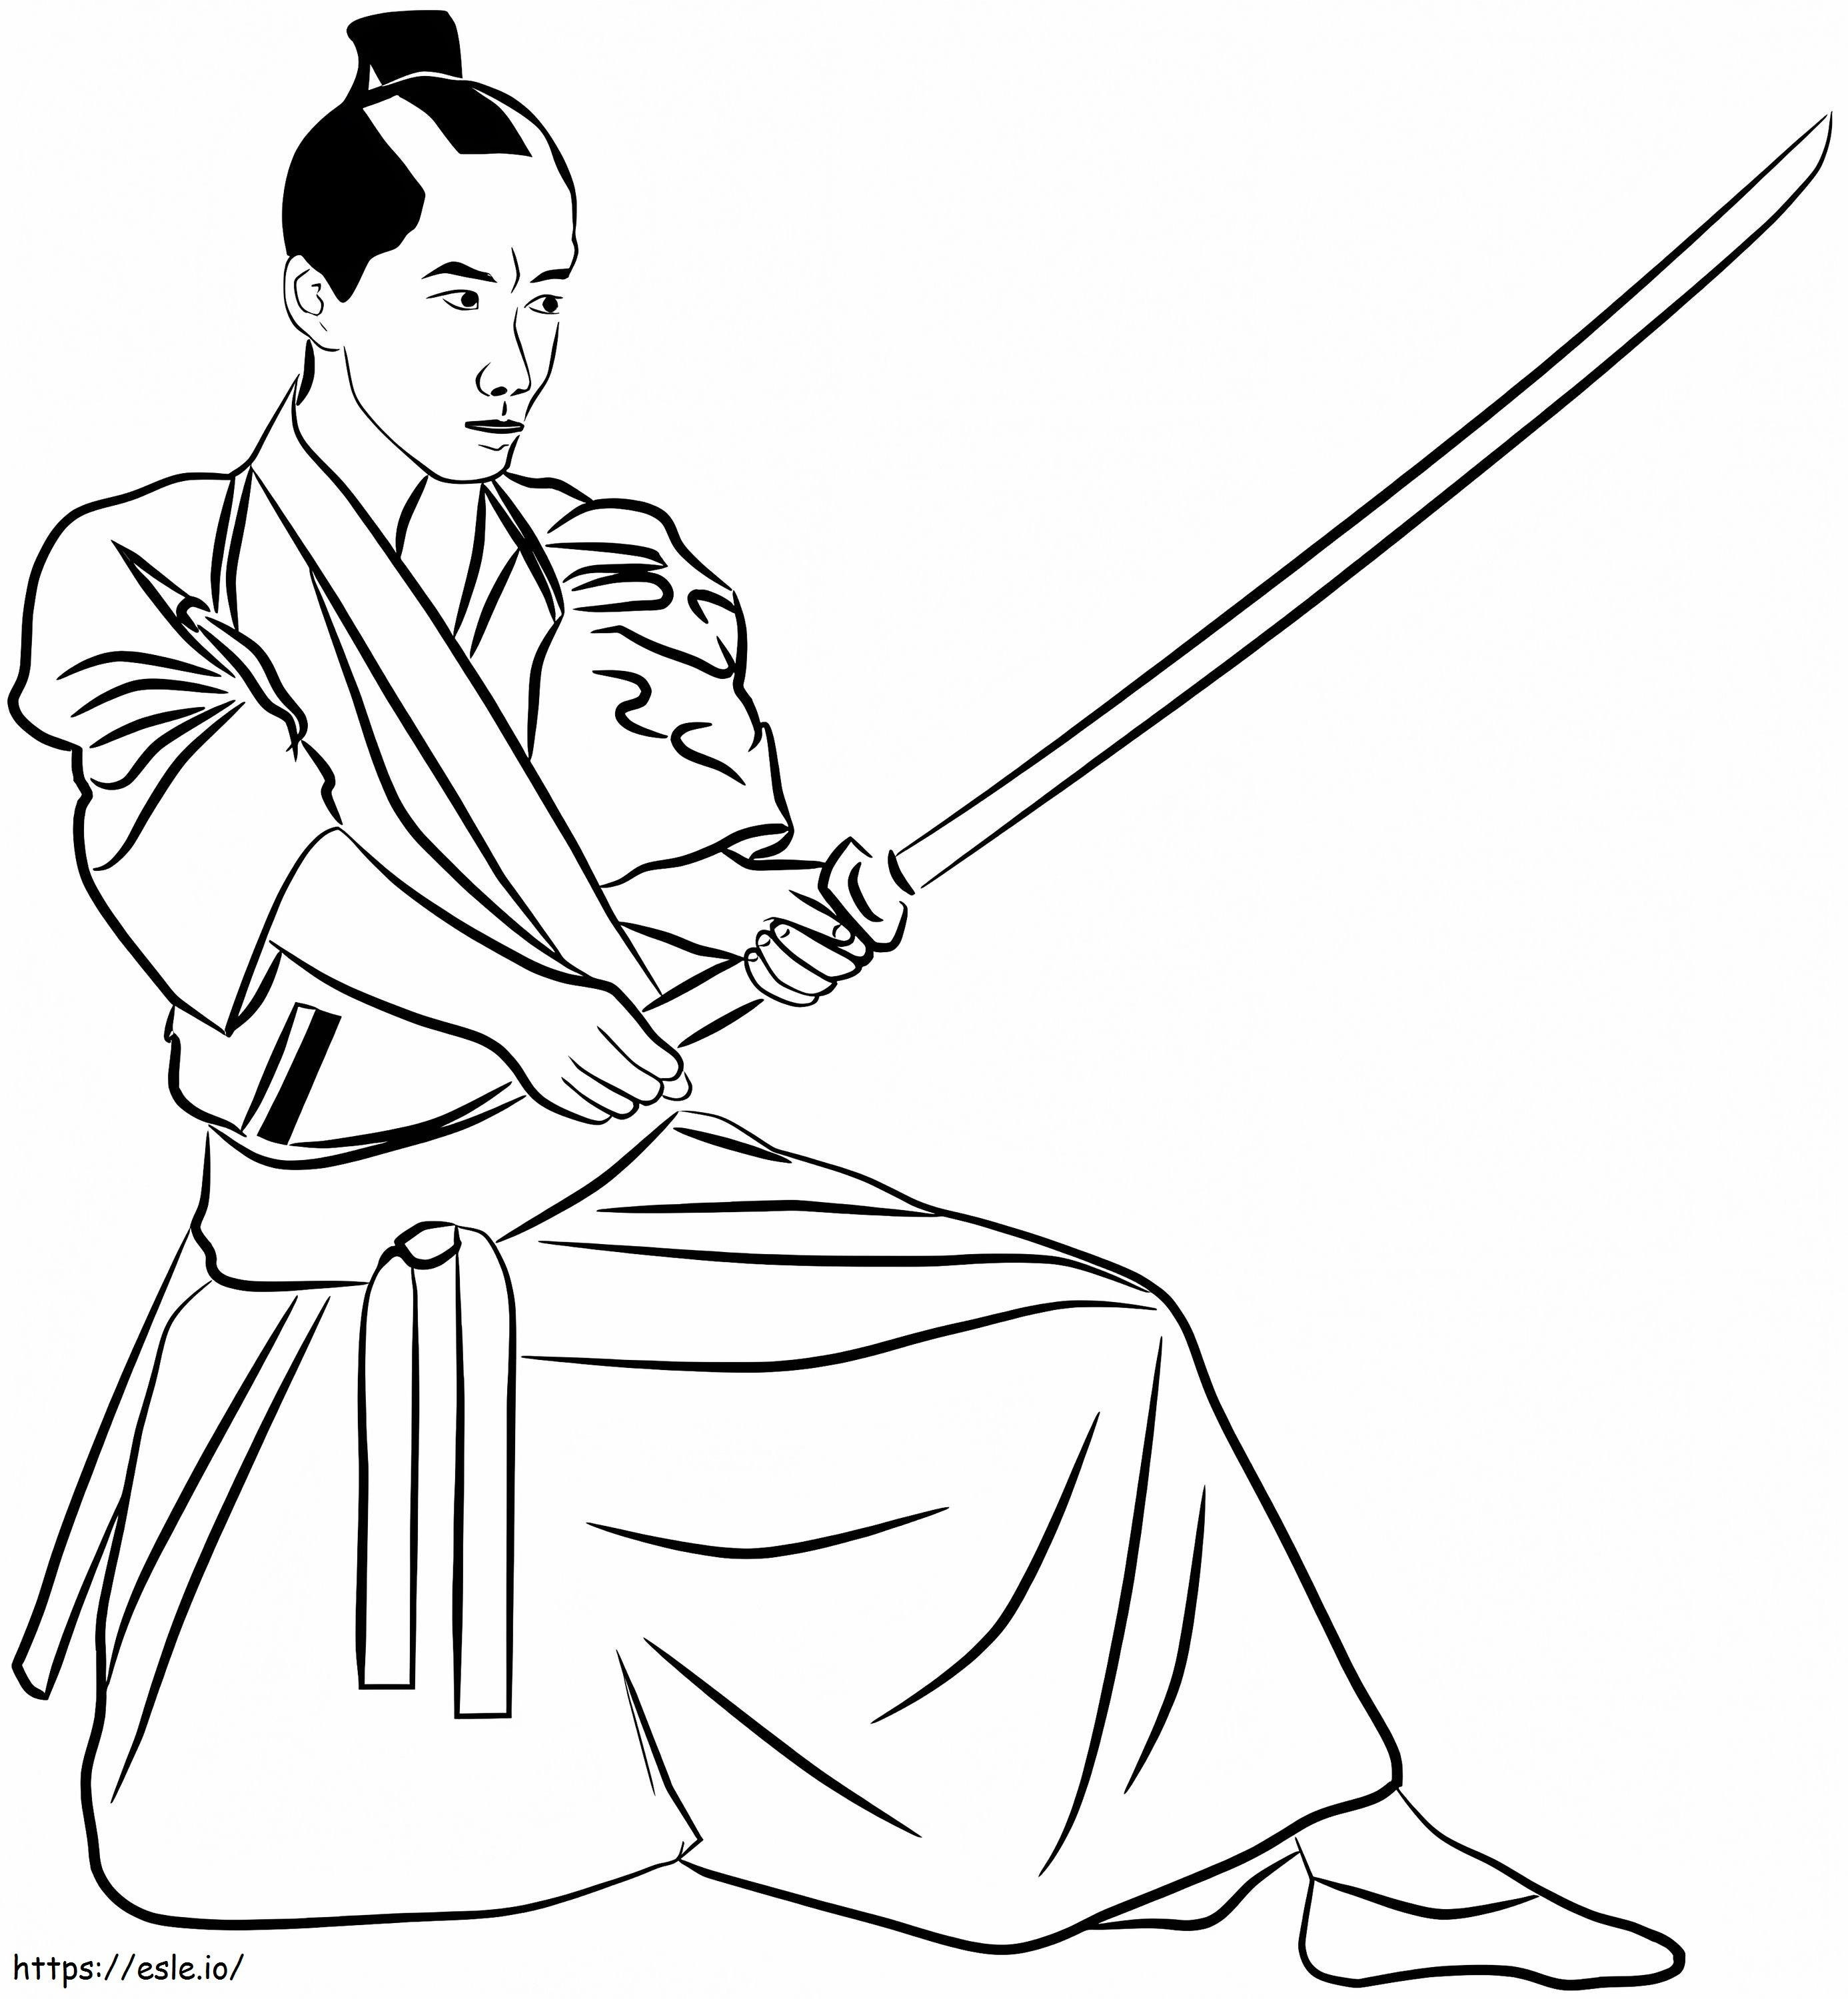 Prosty samuraj kolorowanka